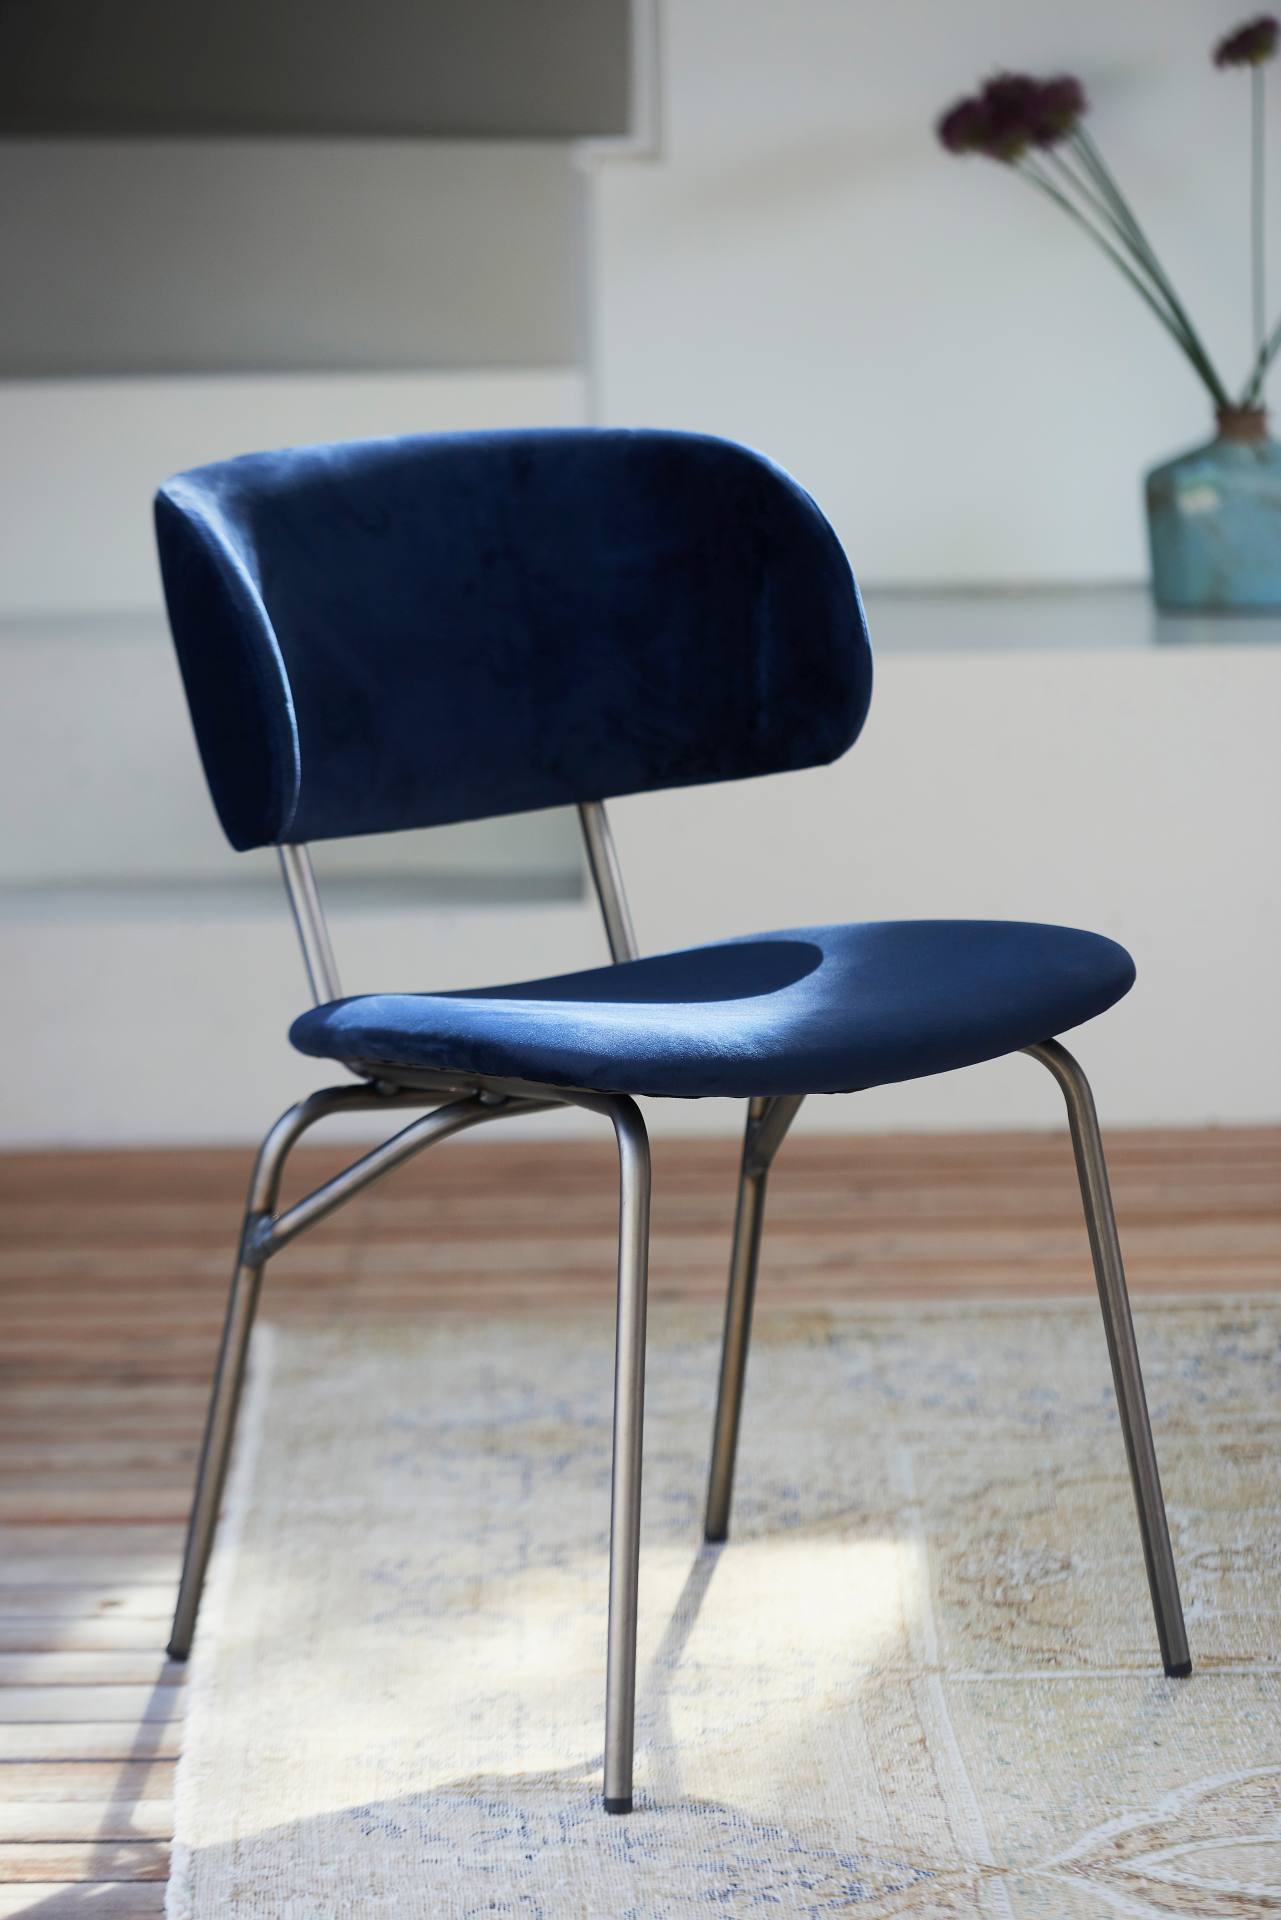 Der moderne Stuhl Giulia wurde aus einem Metall Gestell gefertigt. Die Sitz- und Rückenfläche ist aus einem Samt Bezug. Der Stuhl hat eine dunkelblaue Farbe und ist von der Marke Jan Kurtz.